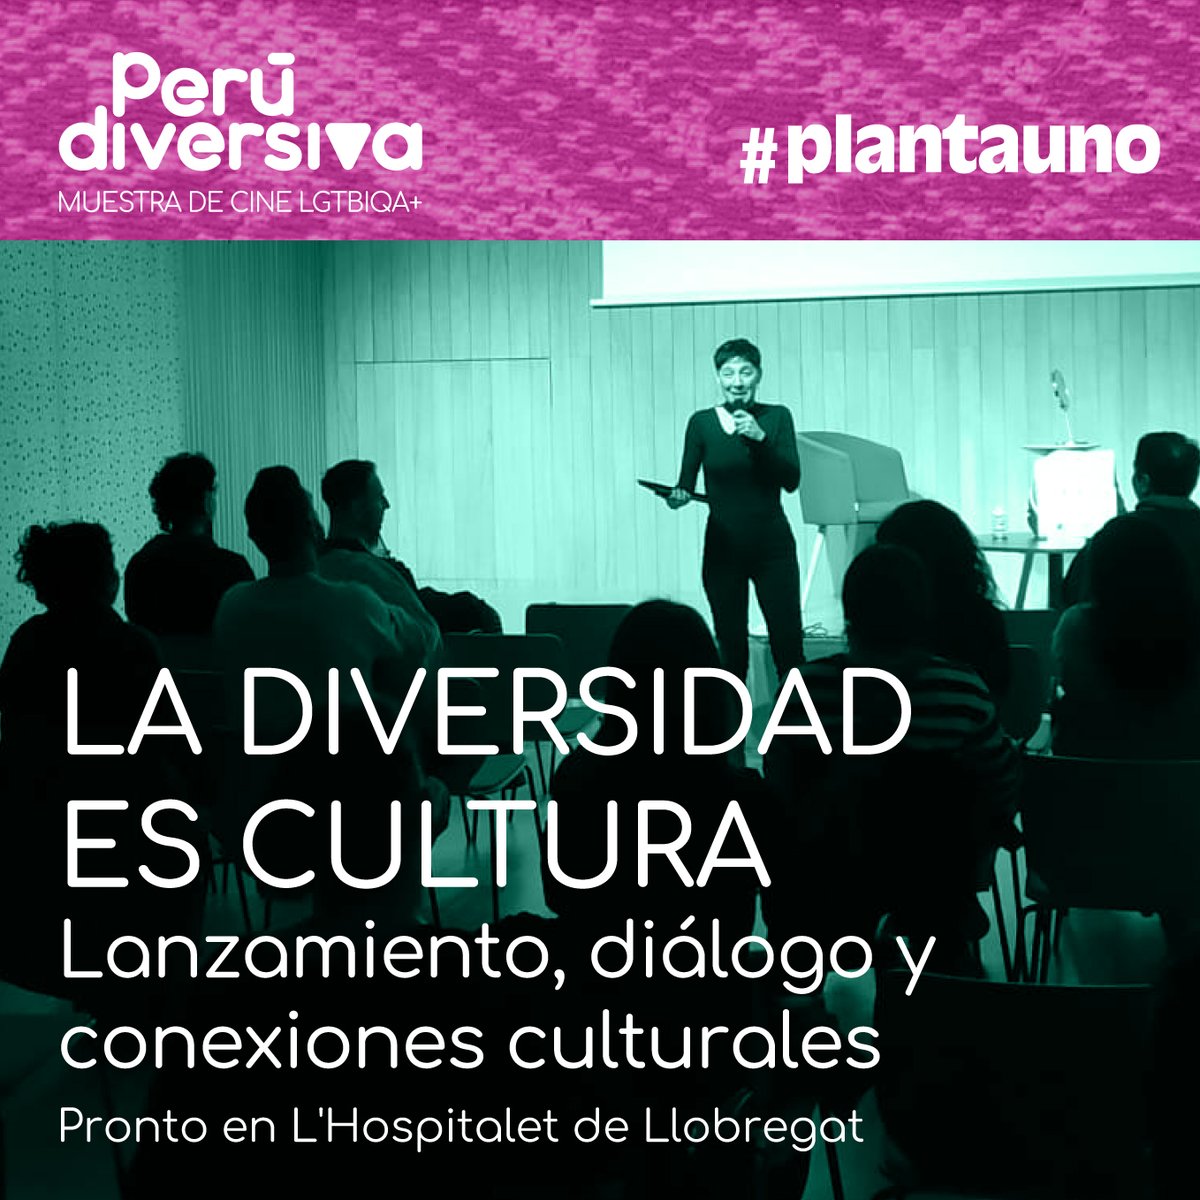 Próximamente se presentará en #plantauno el proyecto Perú Diversiva, la muestra de cine LGTBIQA+ peruana diversa y subversiva en Cataluña, y su nueva propuesta de programación audiovisual y sus actividades formativas